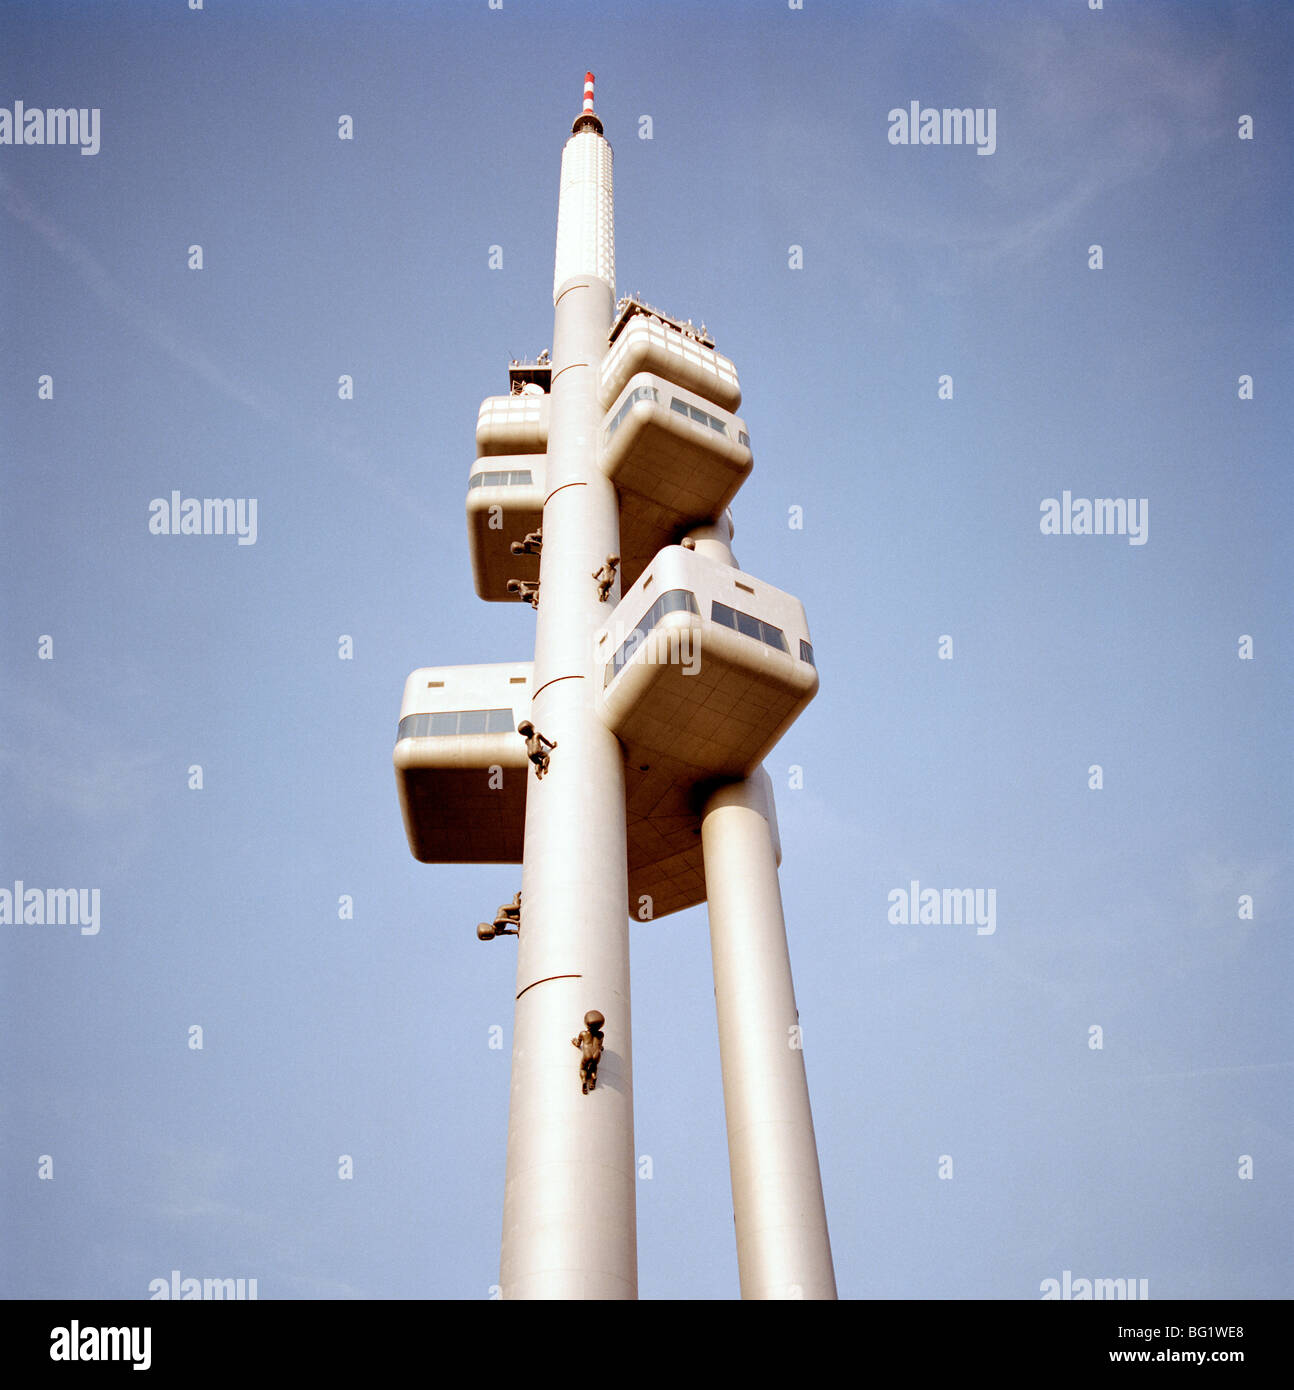 Viaggi nel mondo. David Cerny Tower neonati arte concettuale installazione su Zizkov TV Tower in Zizkov a Praga nella Repubblica Ceca in Europa Orientale. Foto Stock